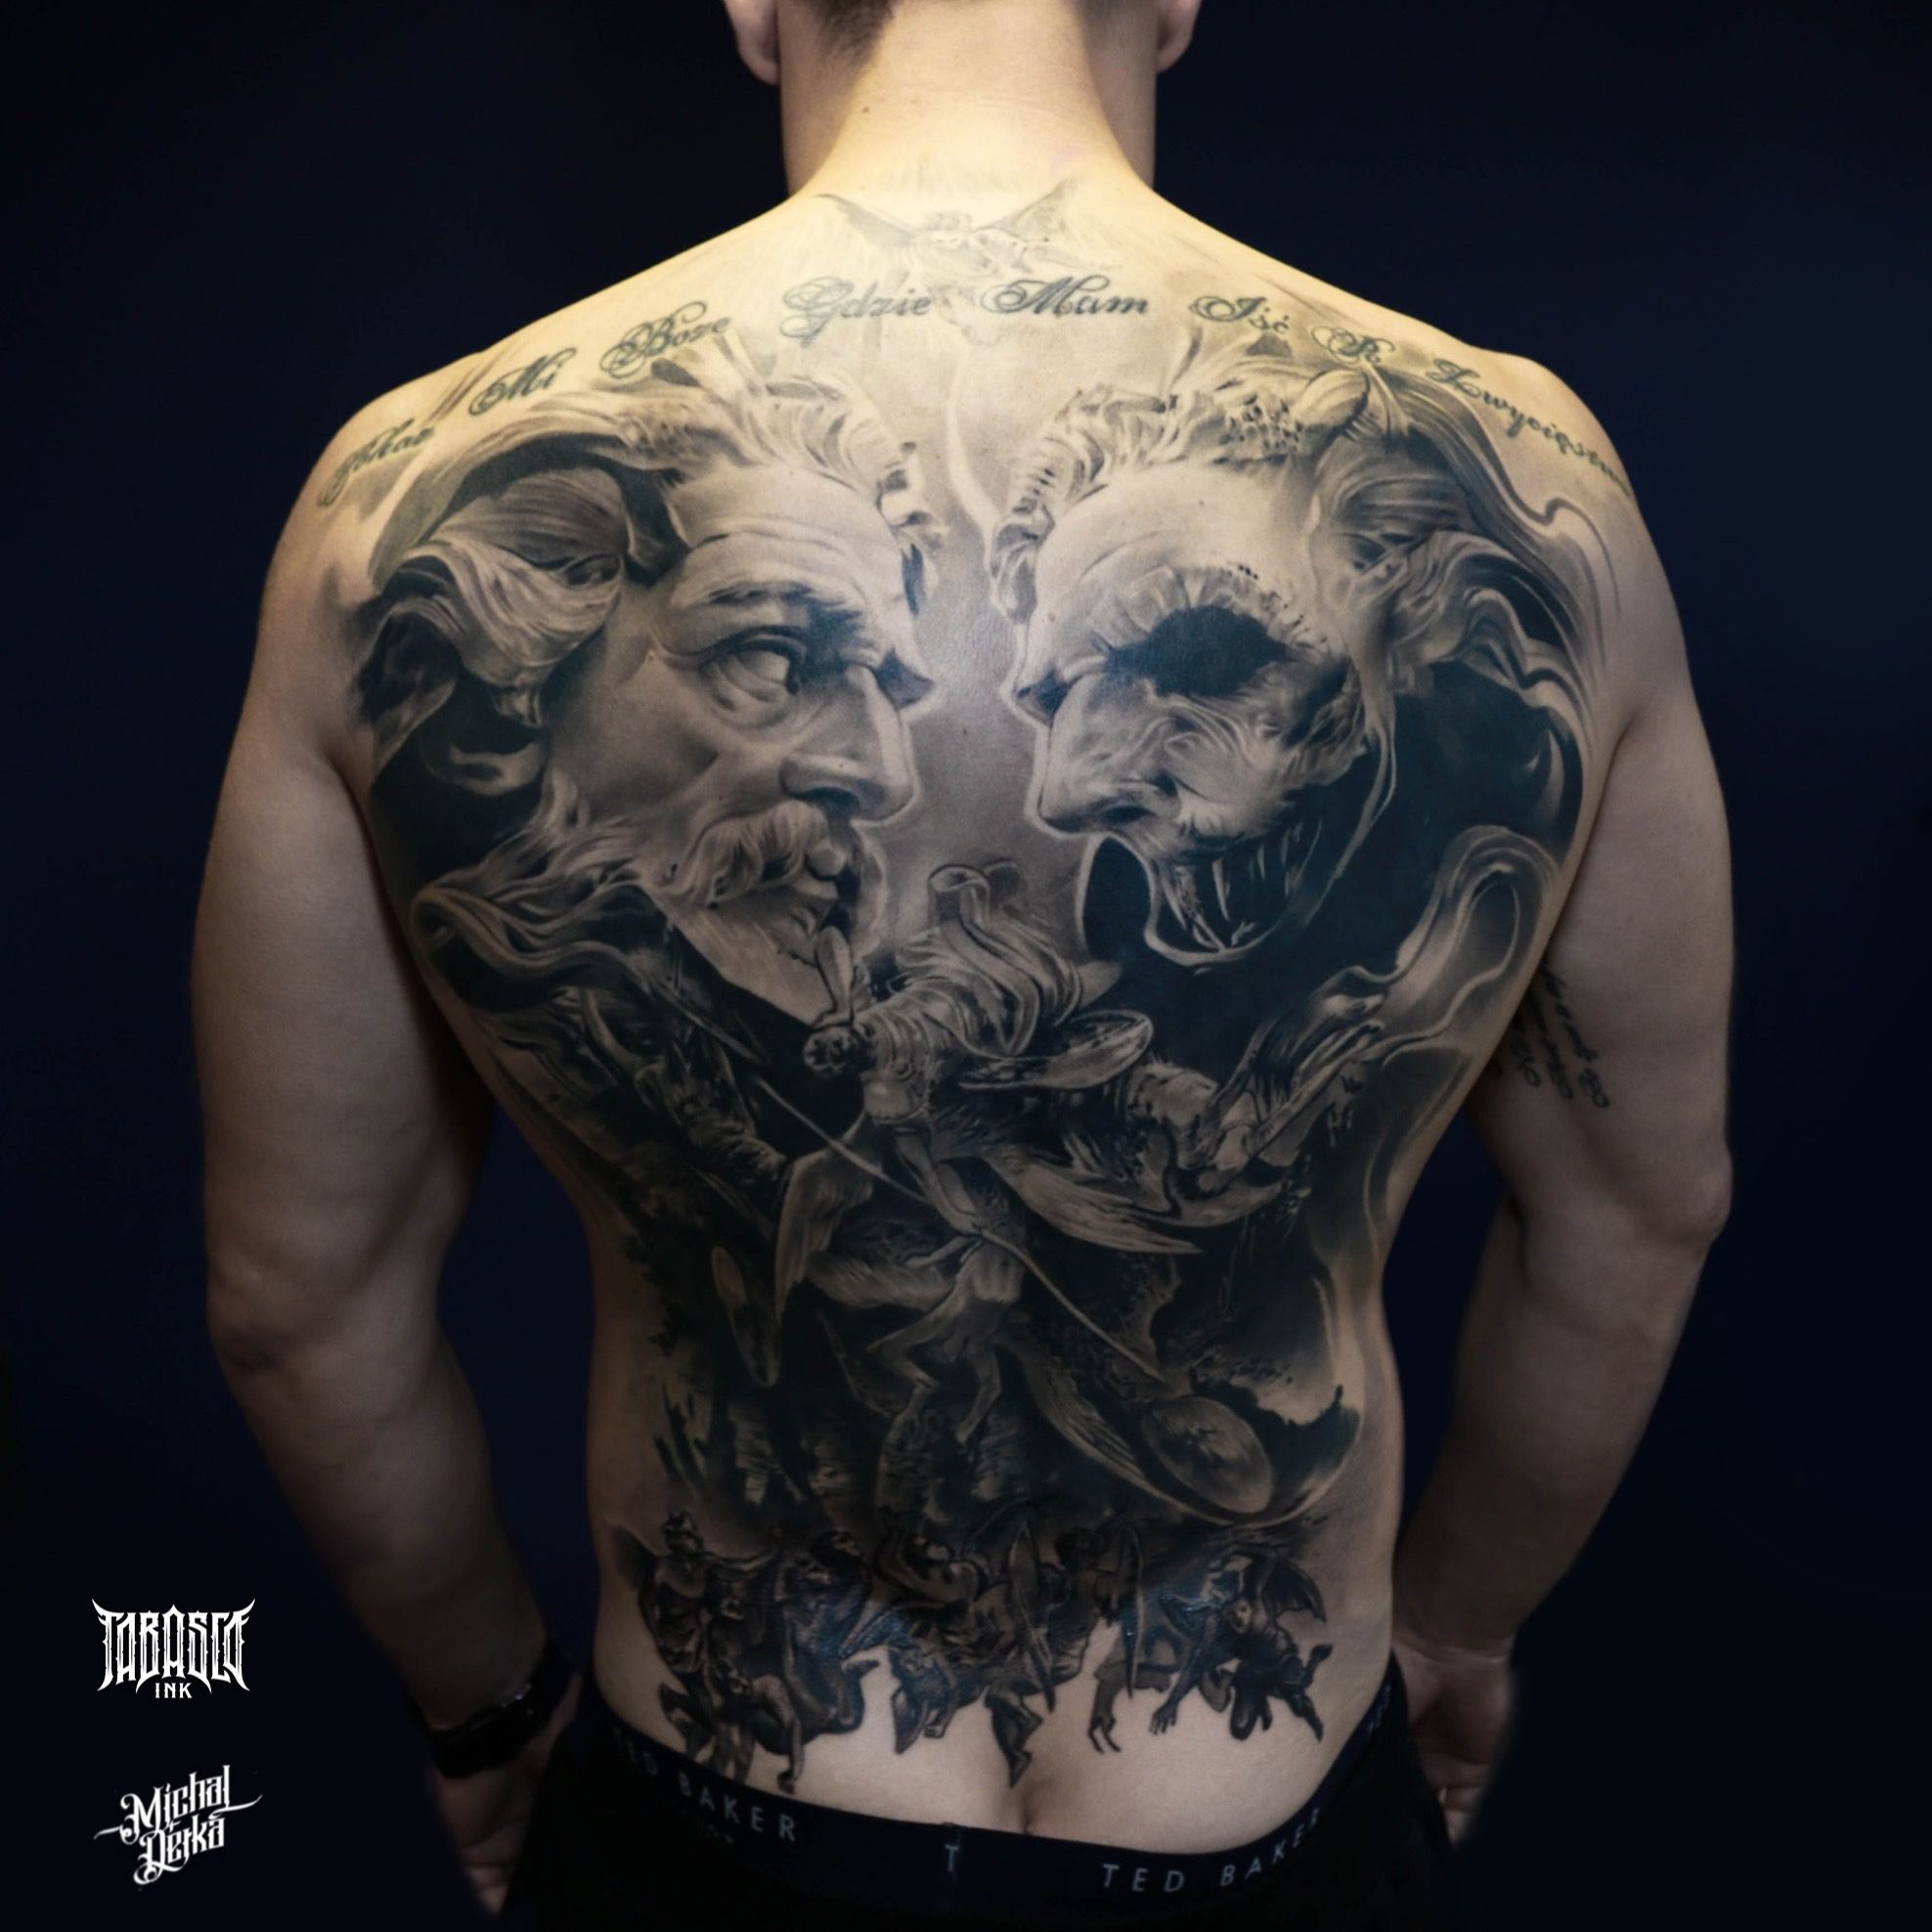 6hrs Permanent Demon  Angel Wings Tattoos Rs 500square inch Inkblot  Tattoo  Art Studio  ID 24768914191